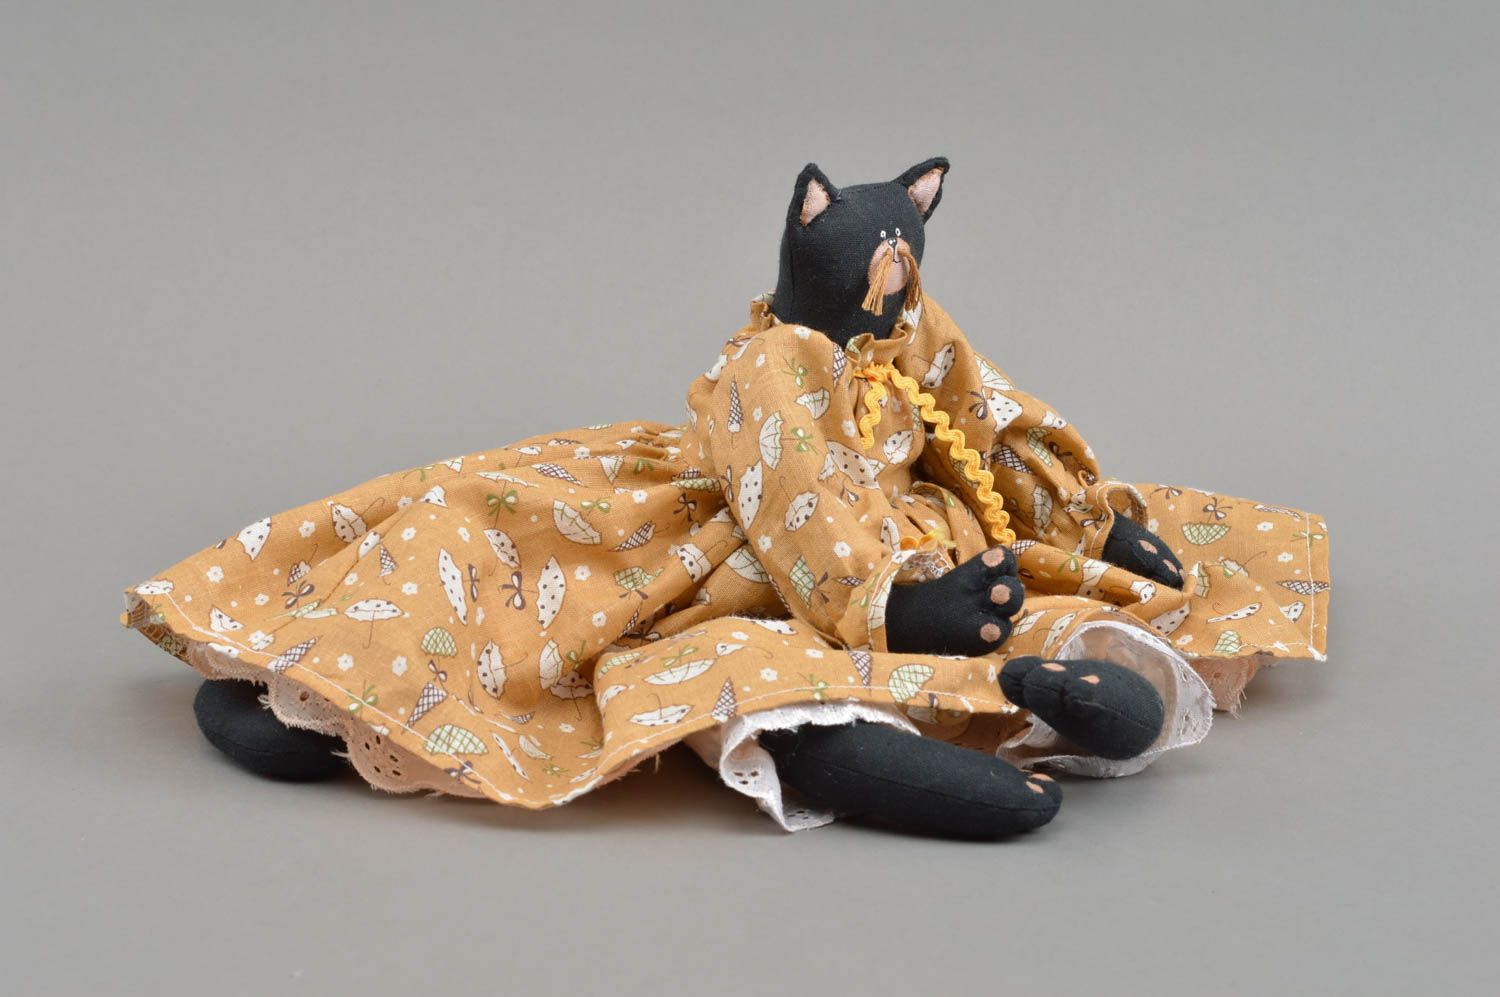 Мягкая кукла кошка в платье из хлопка игрушка для интерьера и детей хенд мейд фото 4